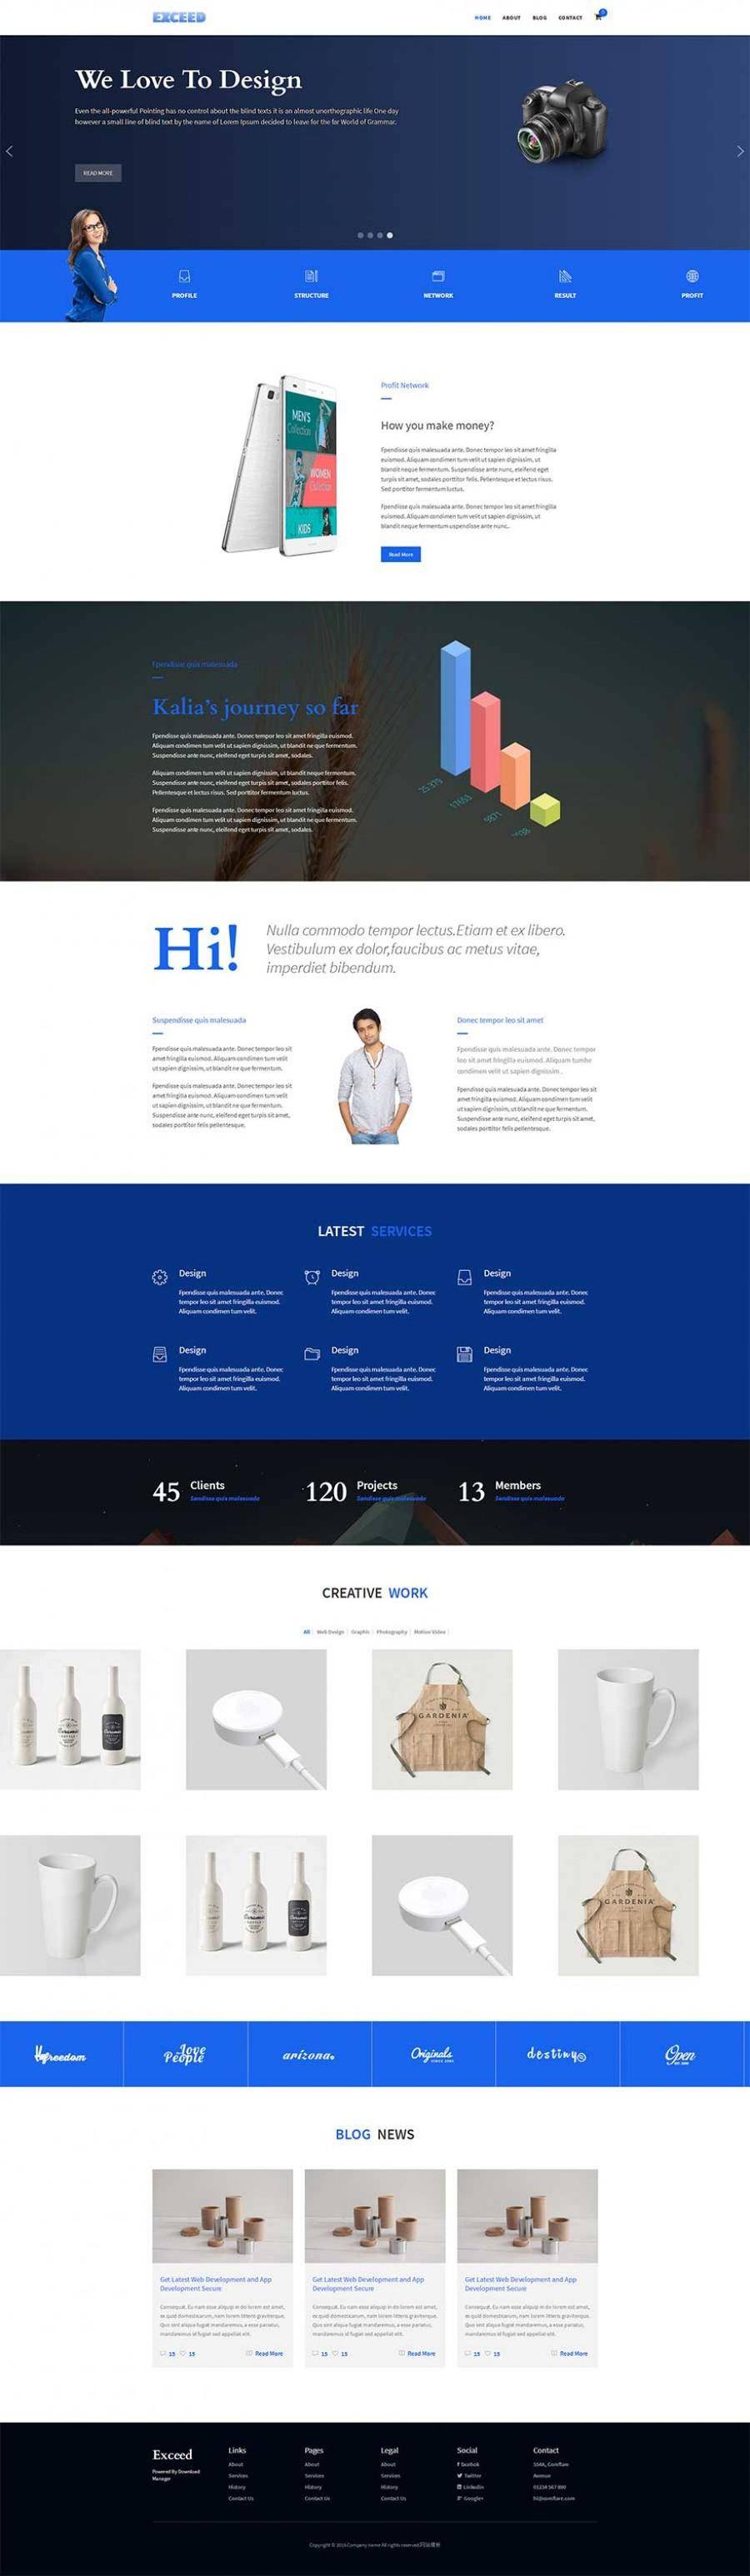 蓝色大气html5响应式UI设计公司网站模板封面图